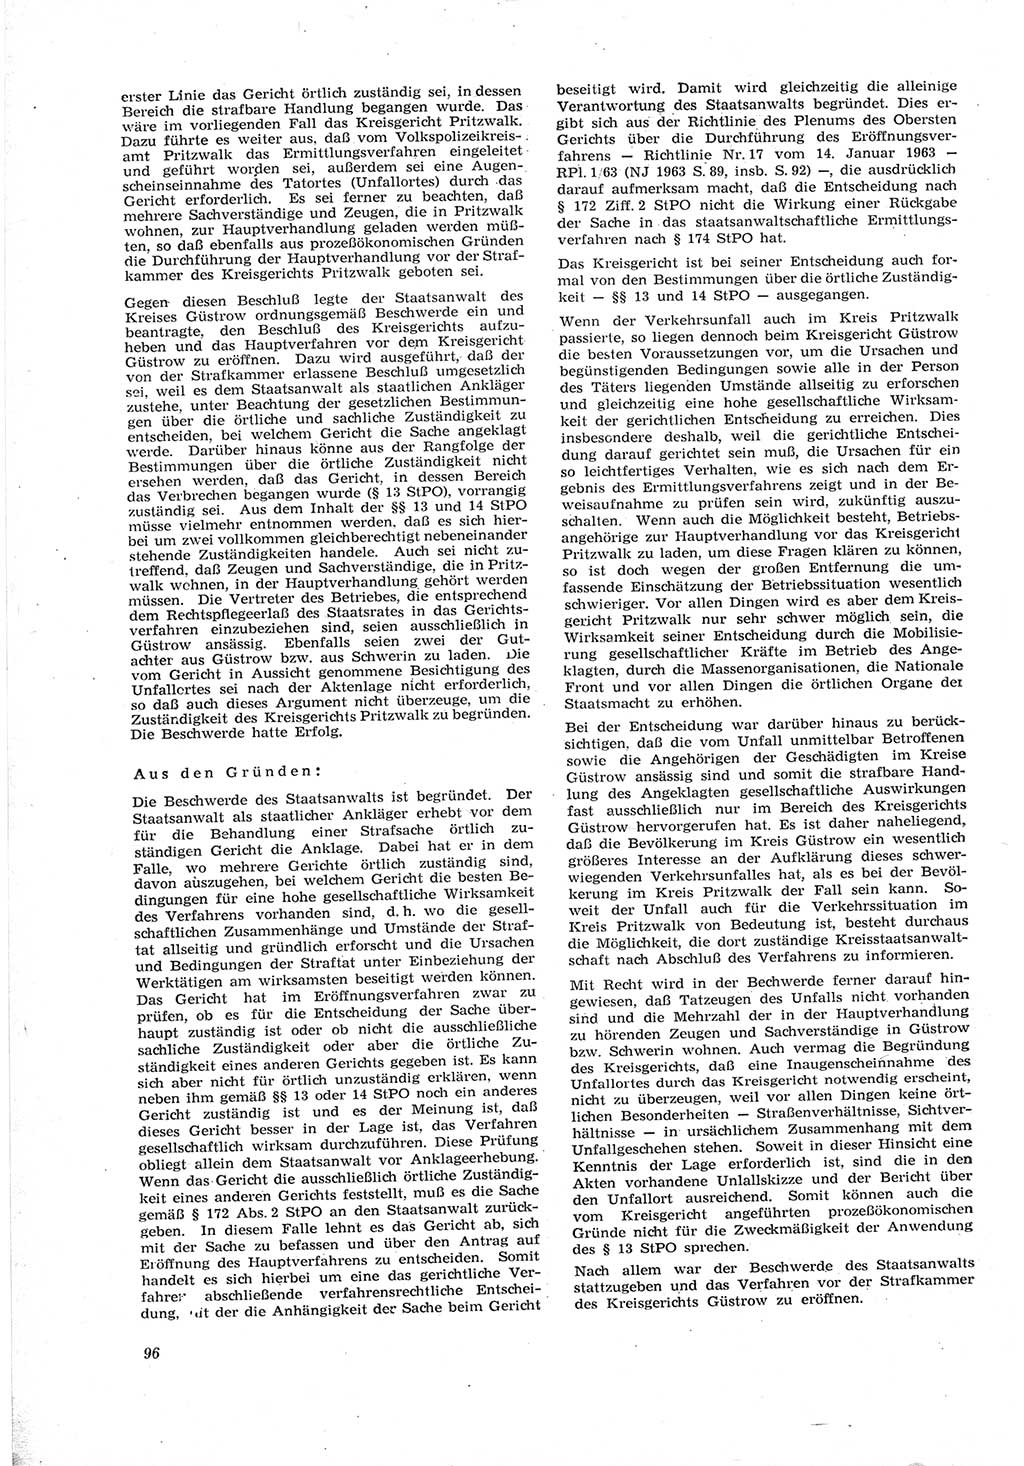 Neue Justiz (NJ), Zeitschrift für Recht und Rechtswissenschaft [Deutsche Demokratische Republik (DDR)], 18. Jahrgang 1964, Seite 96 (NJ DDR 1964, S. 96)